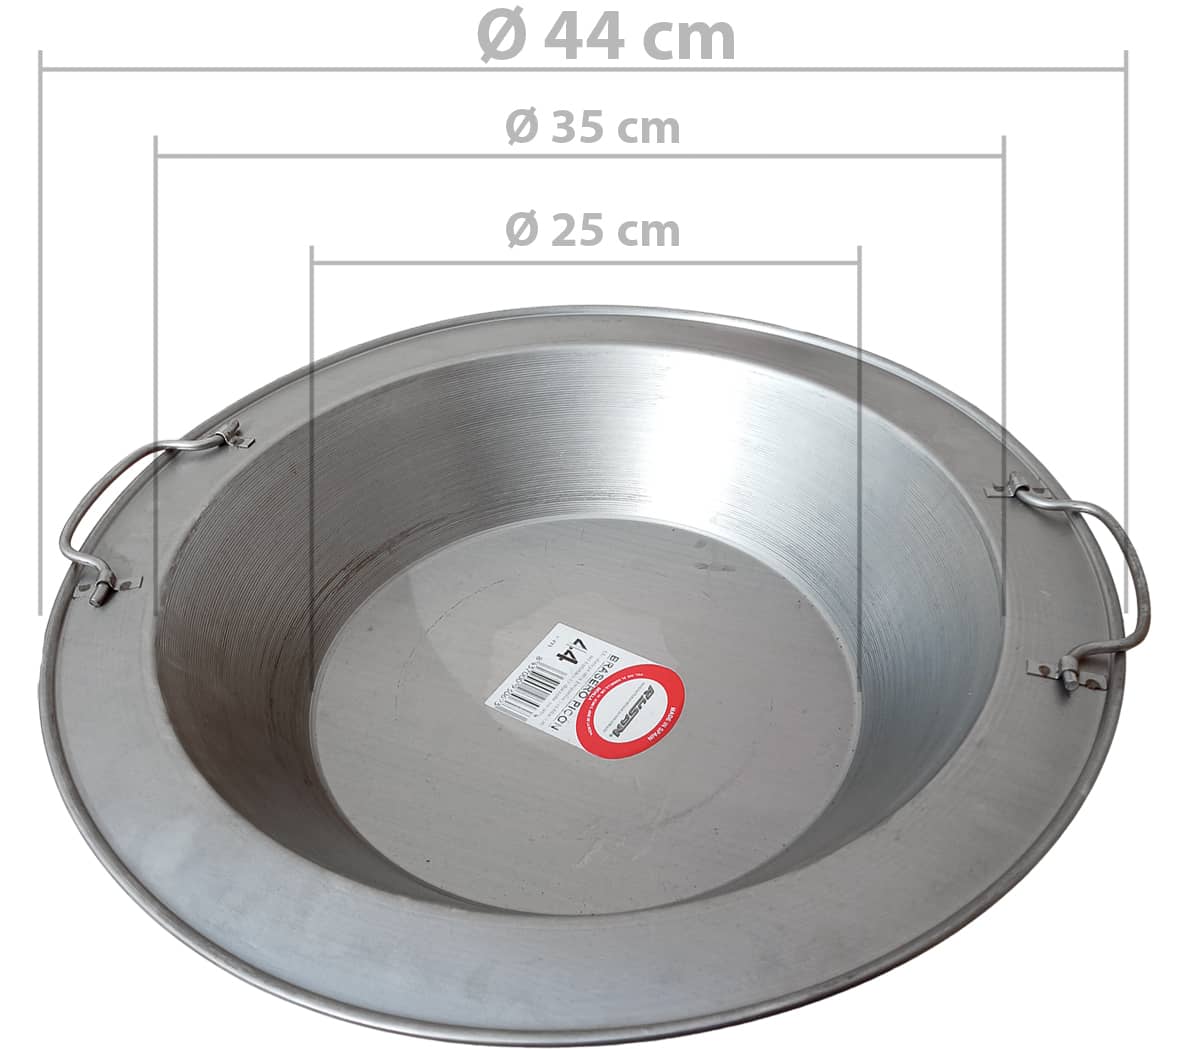 Brasero de cisco, calefacción con copa de cisco para carbón, diámetro Ø44, profundidad 7,5 cm.